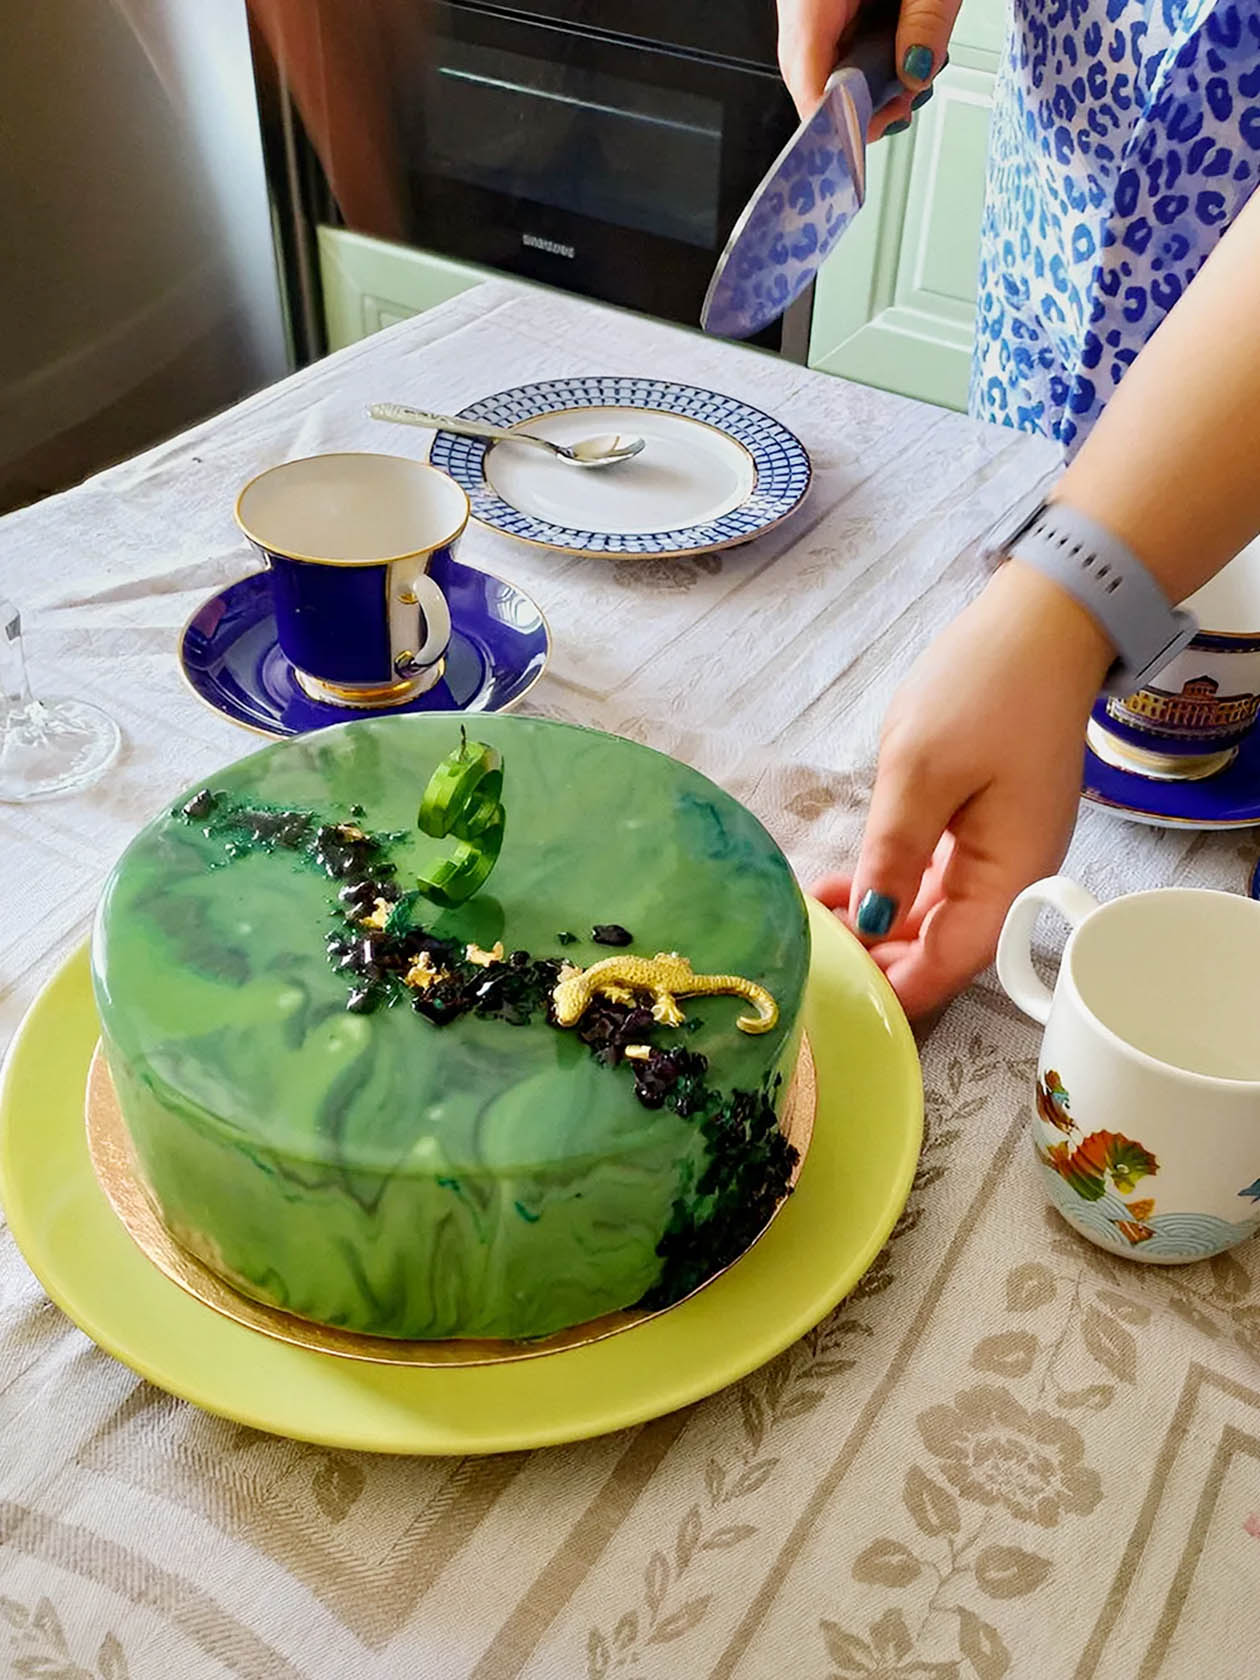 Муссовый торт с хитрым декором потянул на 3500 ₽